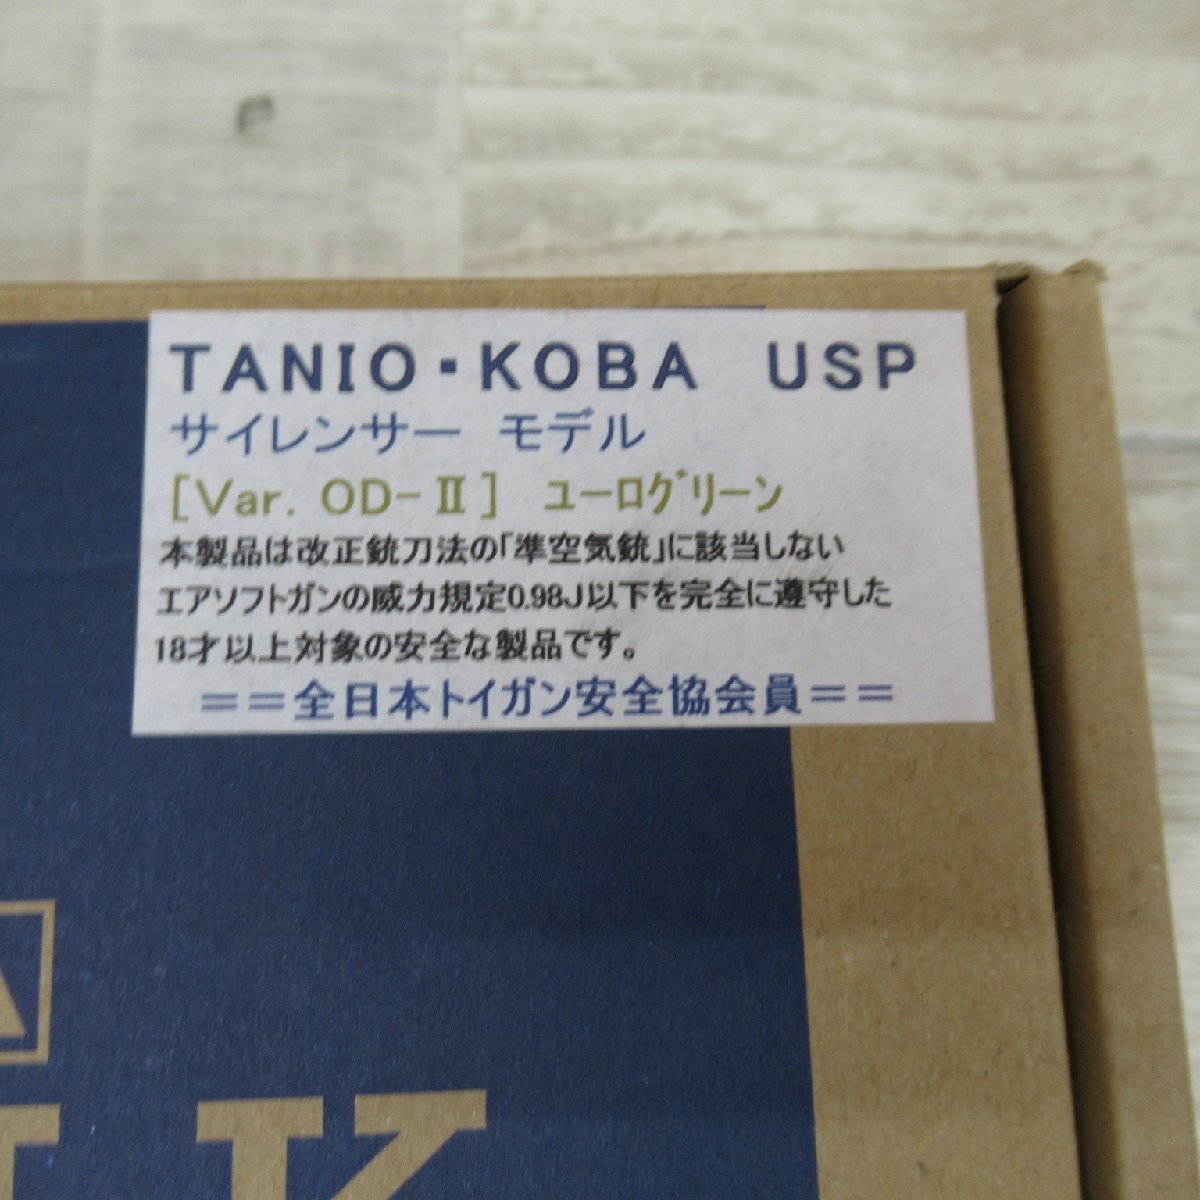 TC1118/TANIO KOBA USP/BLK サイレンサーモデル Ver OD-Ⅲ ユーログリーン 40 TACTICAL SD タニオ・コバ ブローバックサイレンサー_画像2